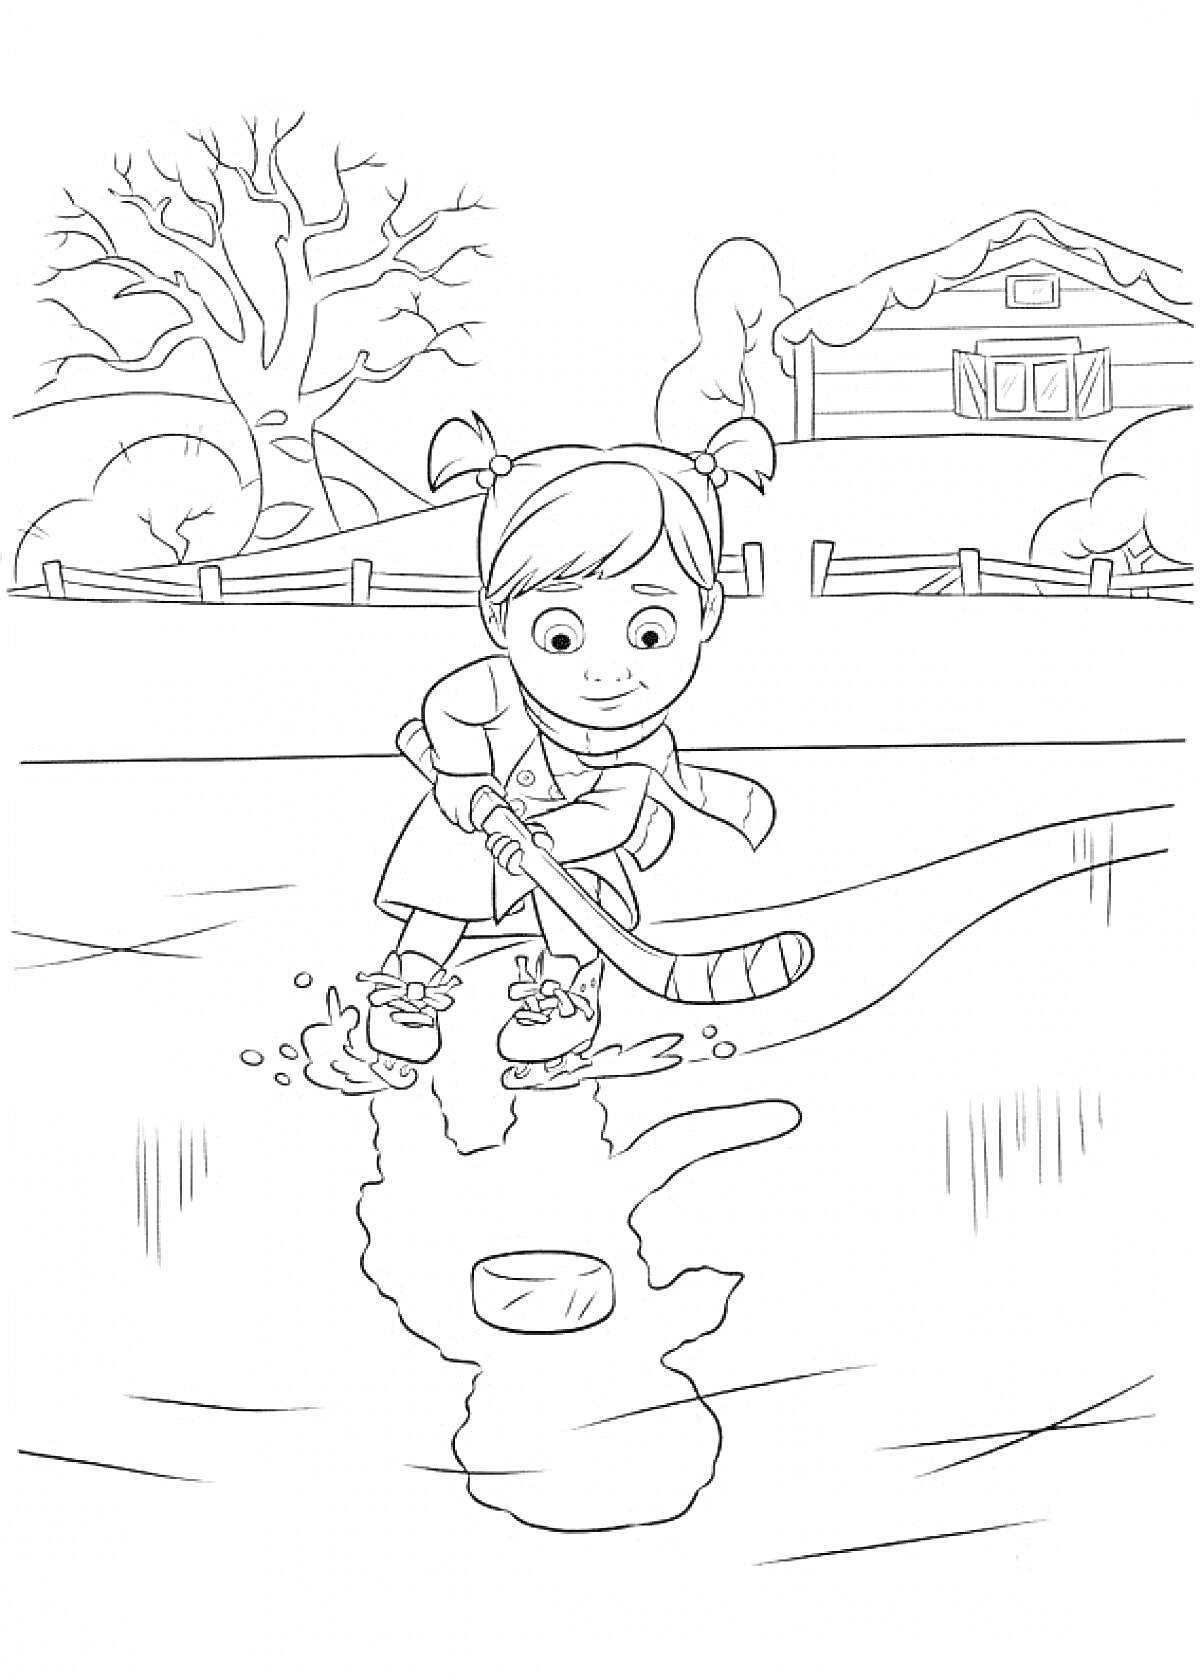 Раскраска Девочка играет в хоккей на уличной ледовой площадке возле дома